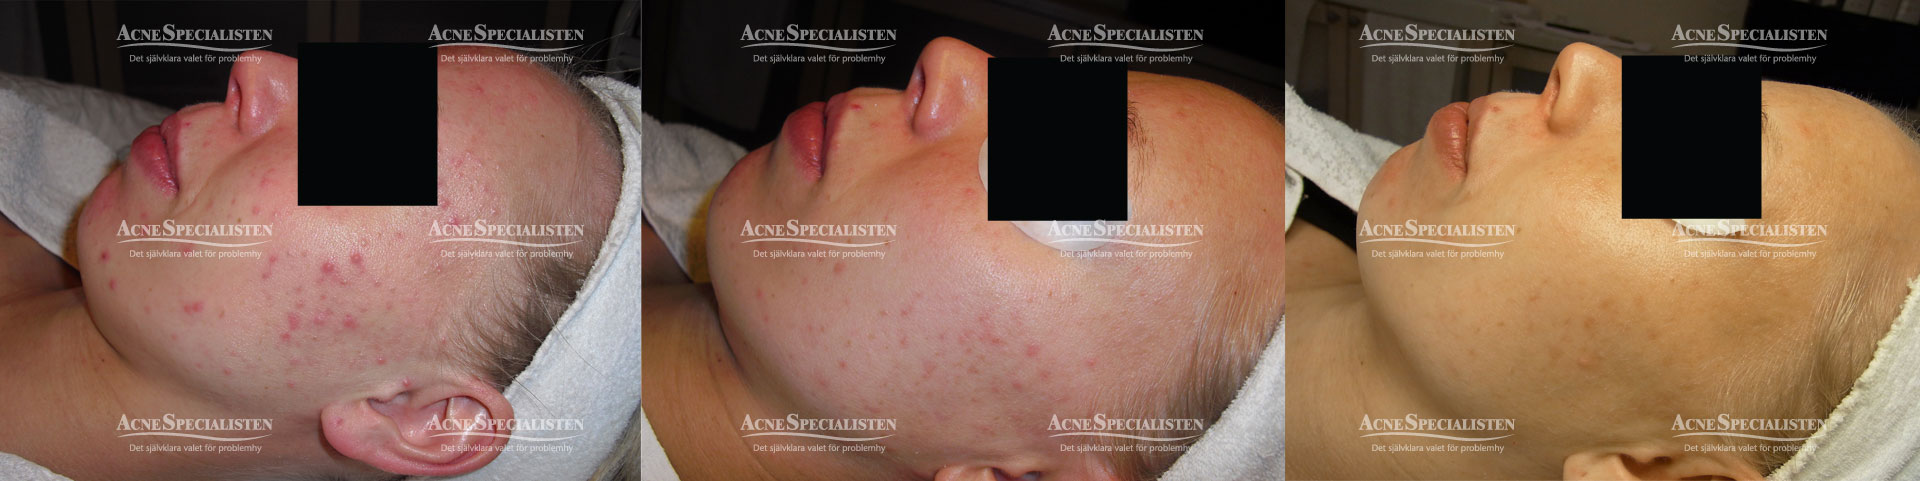 blandhy acne finnar före och efter bilder